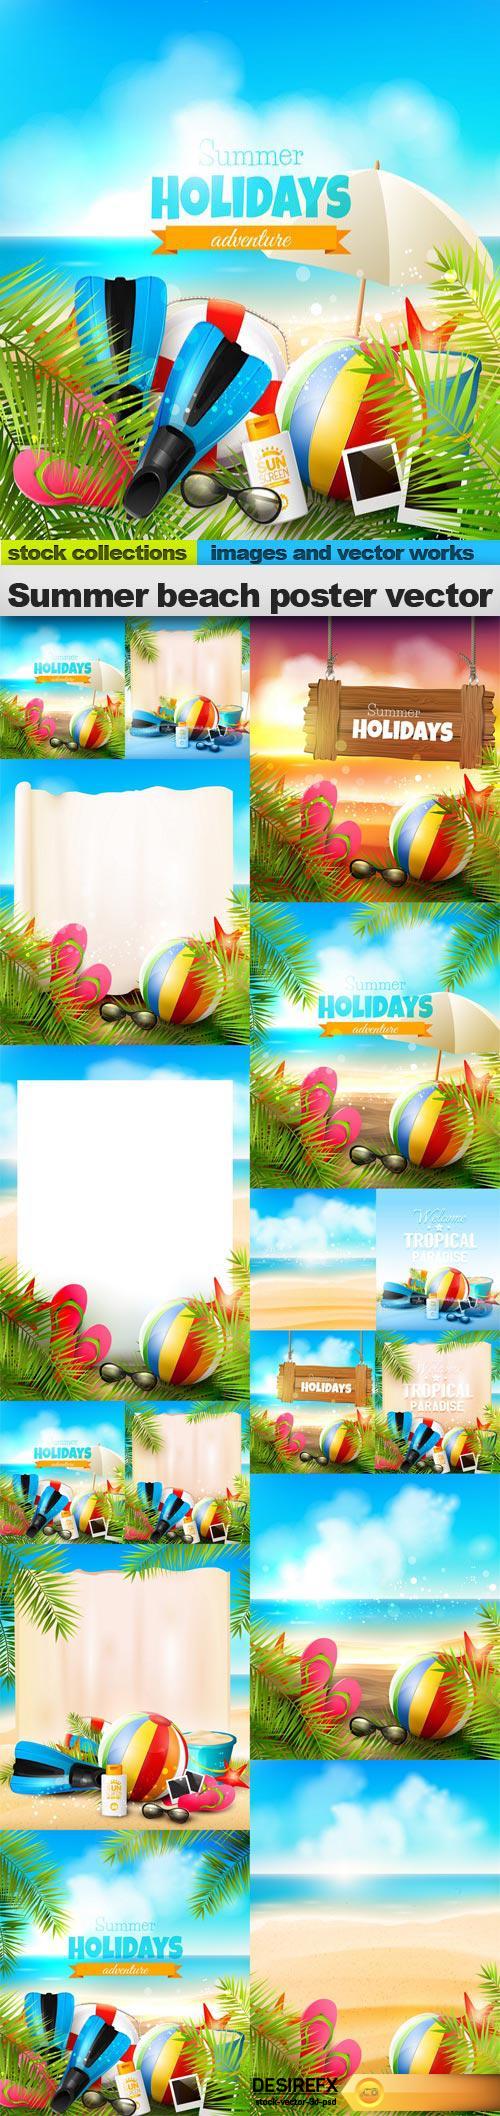 Summer beach poster vector, 15 x EPS